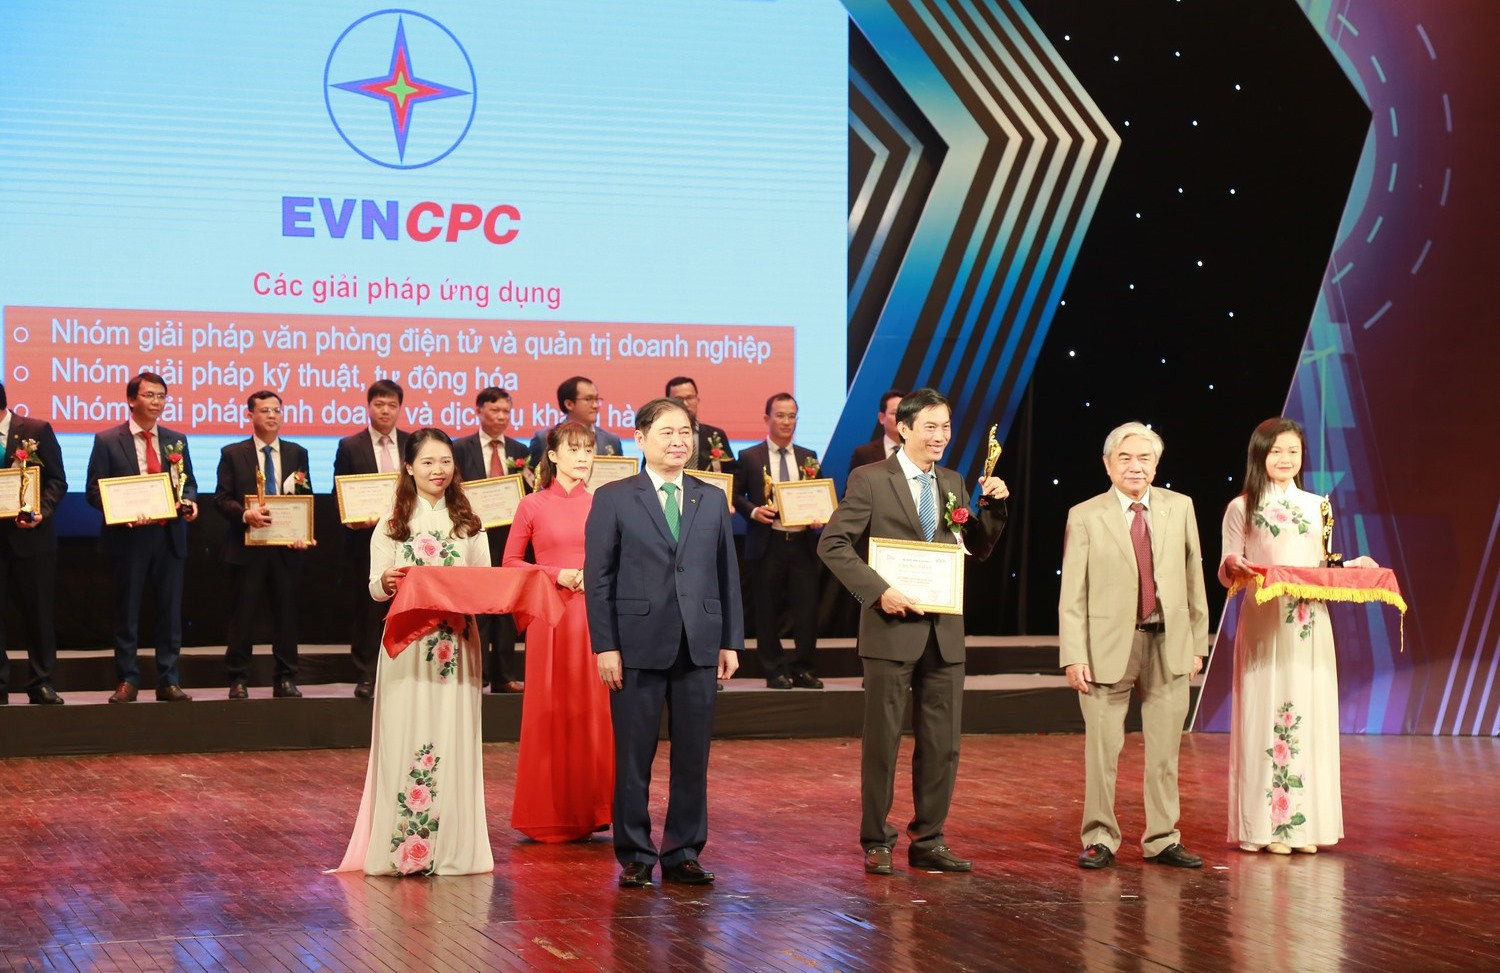 Lãnh đạo EVNCPC nhận giải thưởng Chuyển đổi số ở hạng mục “Doanh nghiệp Chuyển đổi số xuất sắc“.